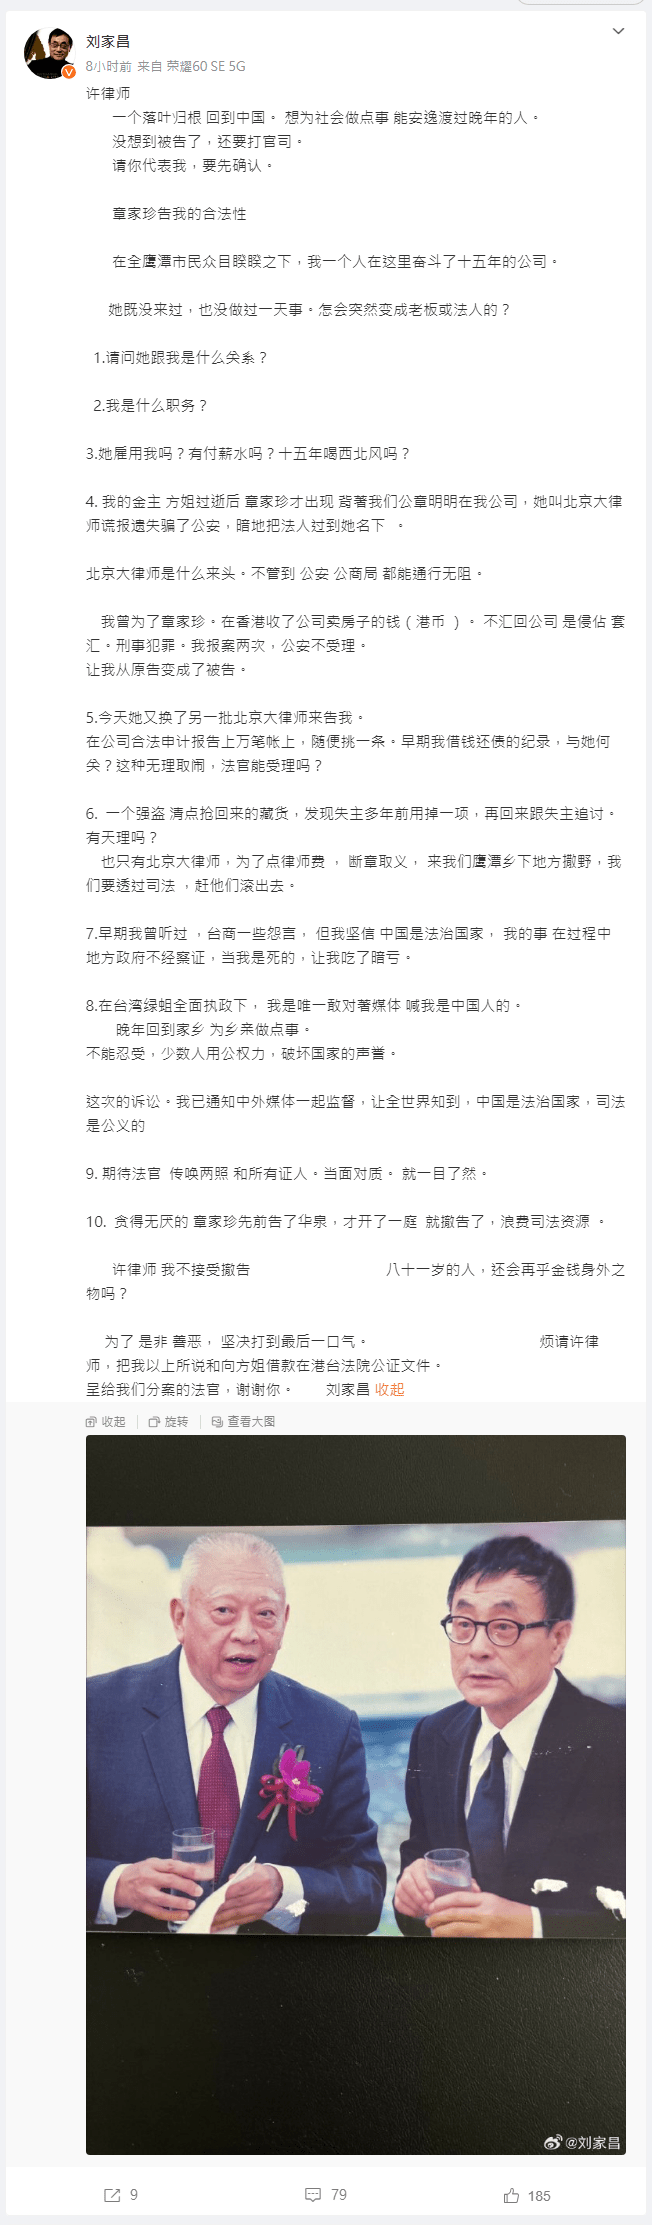 劉家昌又在微博發文，最後劉家昌更說：「許律師我不接受撤告，八十一歲的人，還會再乎金錢身外之物嗎？為了是非善惡，堅決打到最後一口氣。」